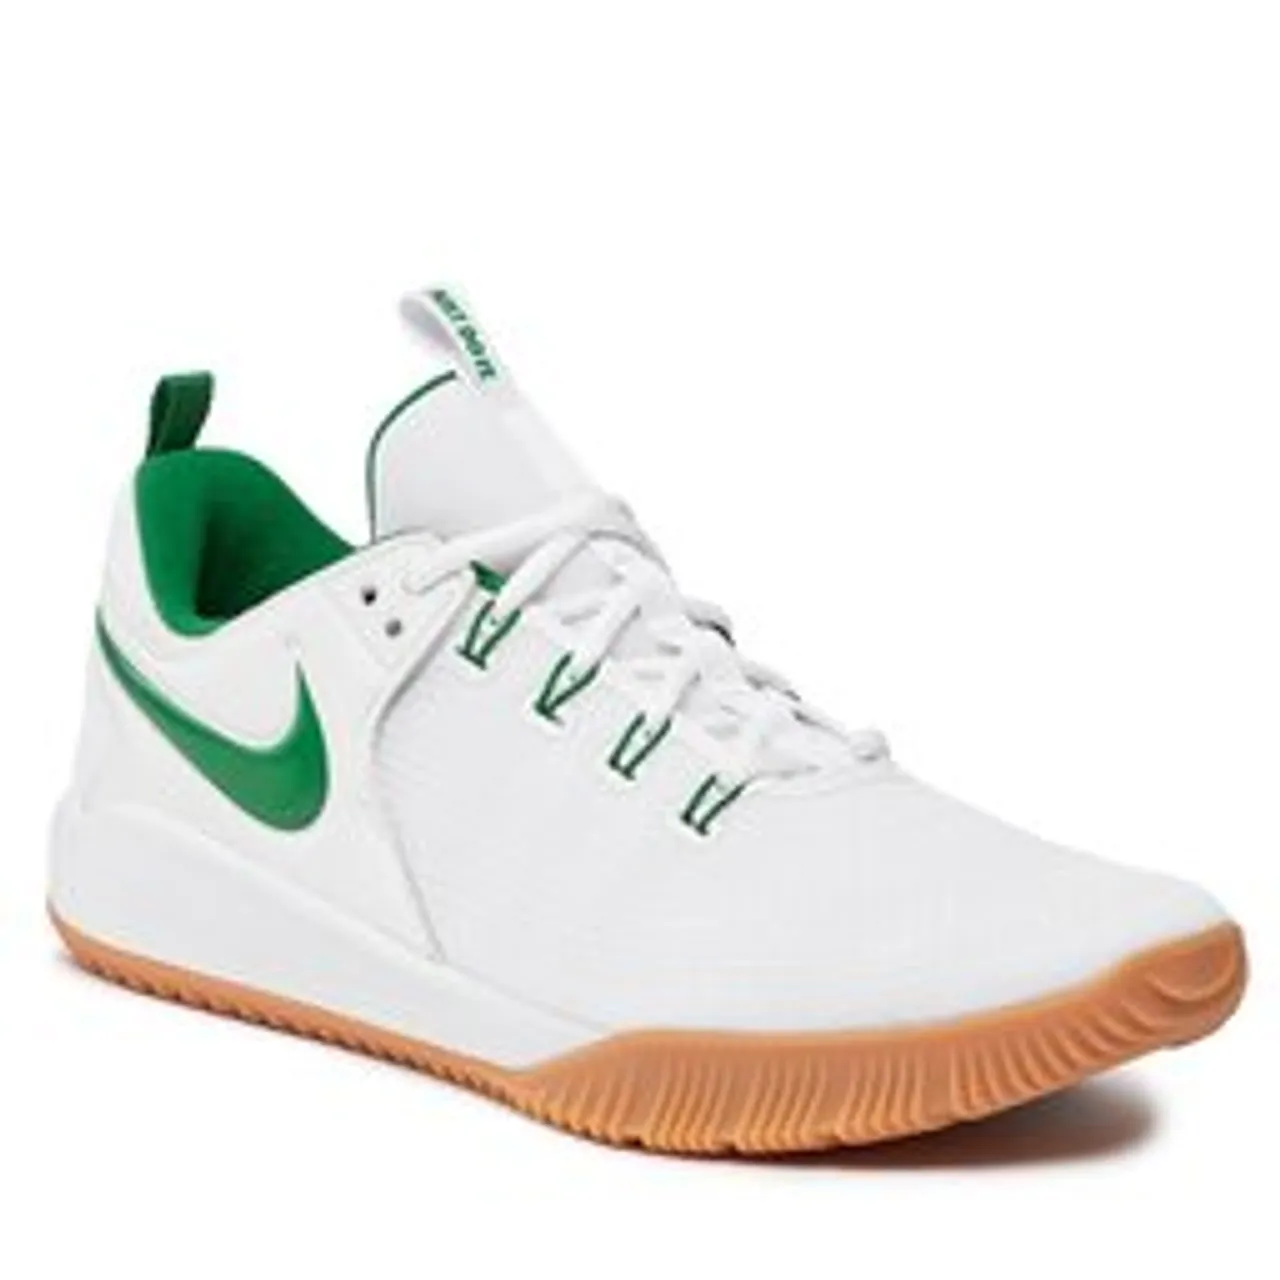 Schuhe Nike Air Zoom Hyperace 2 Se DM8199 102 White/Apple Green/White